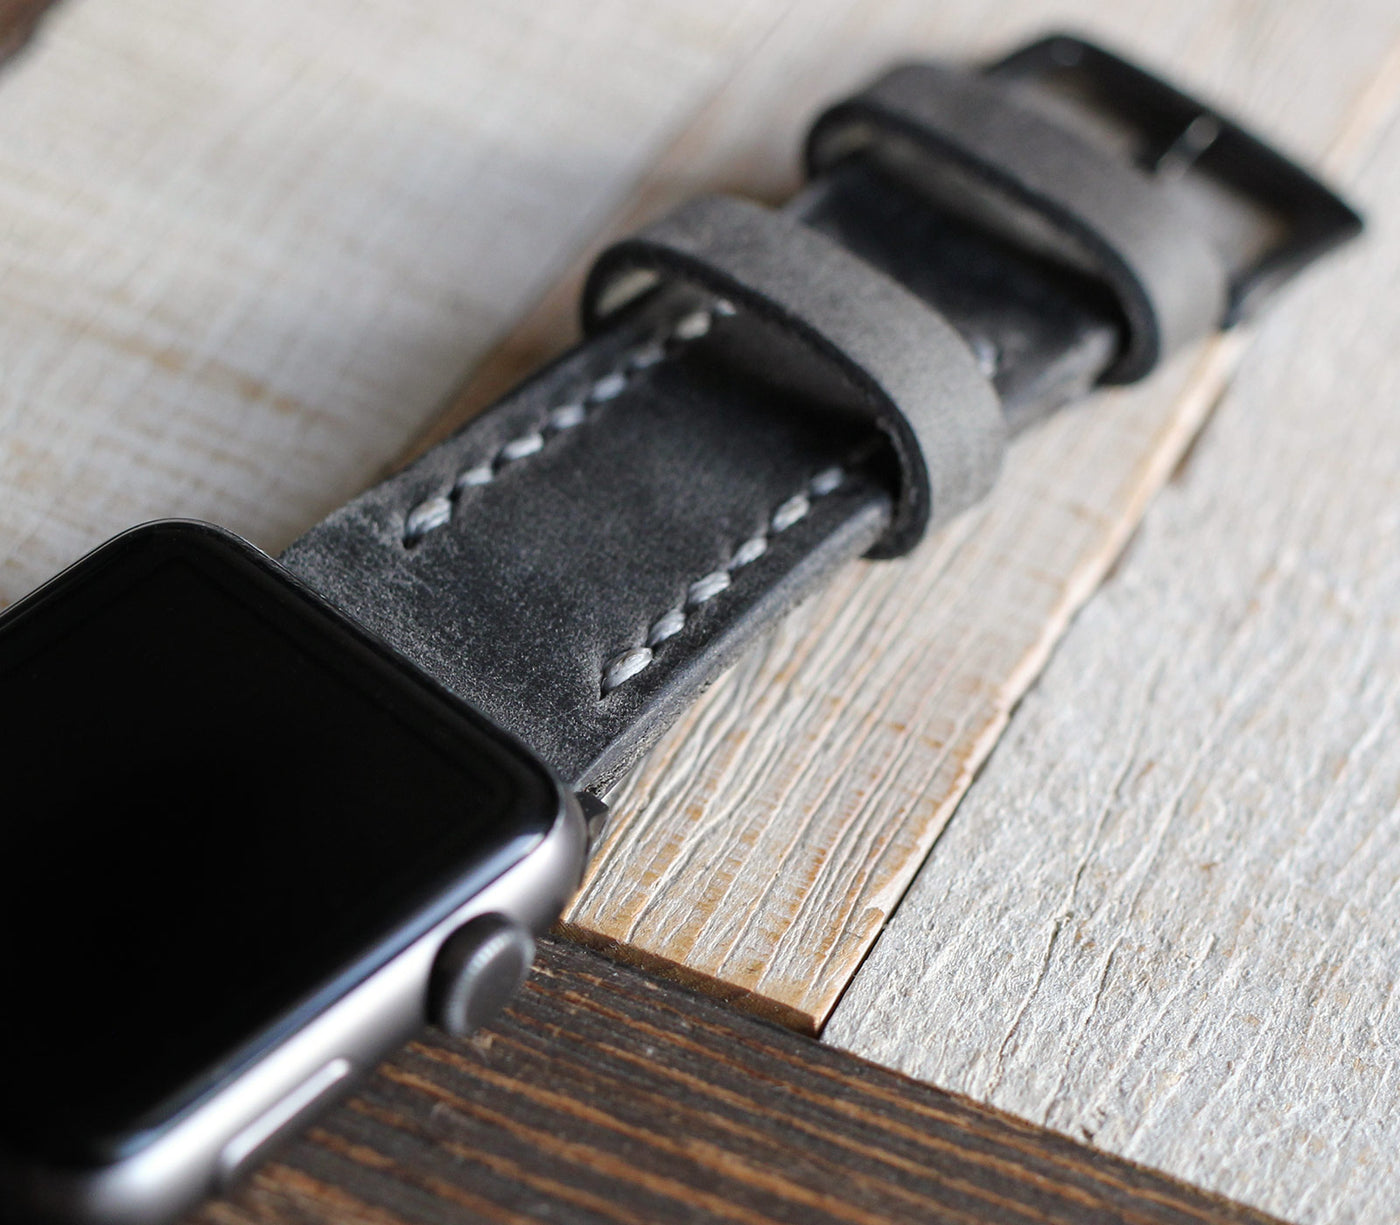 Özel Yapım Apple Watch Deri Saat Kayışı - Antik Gri